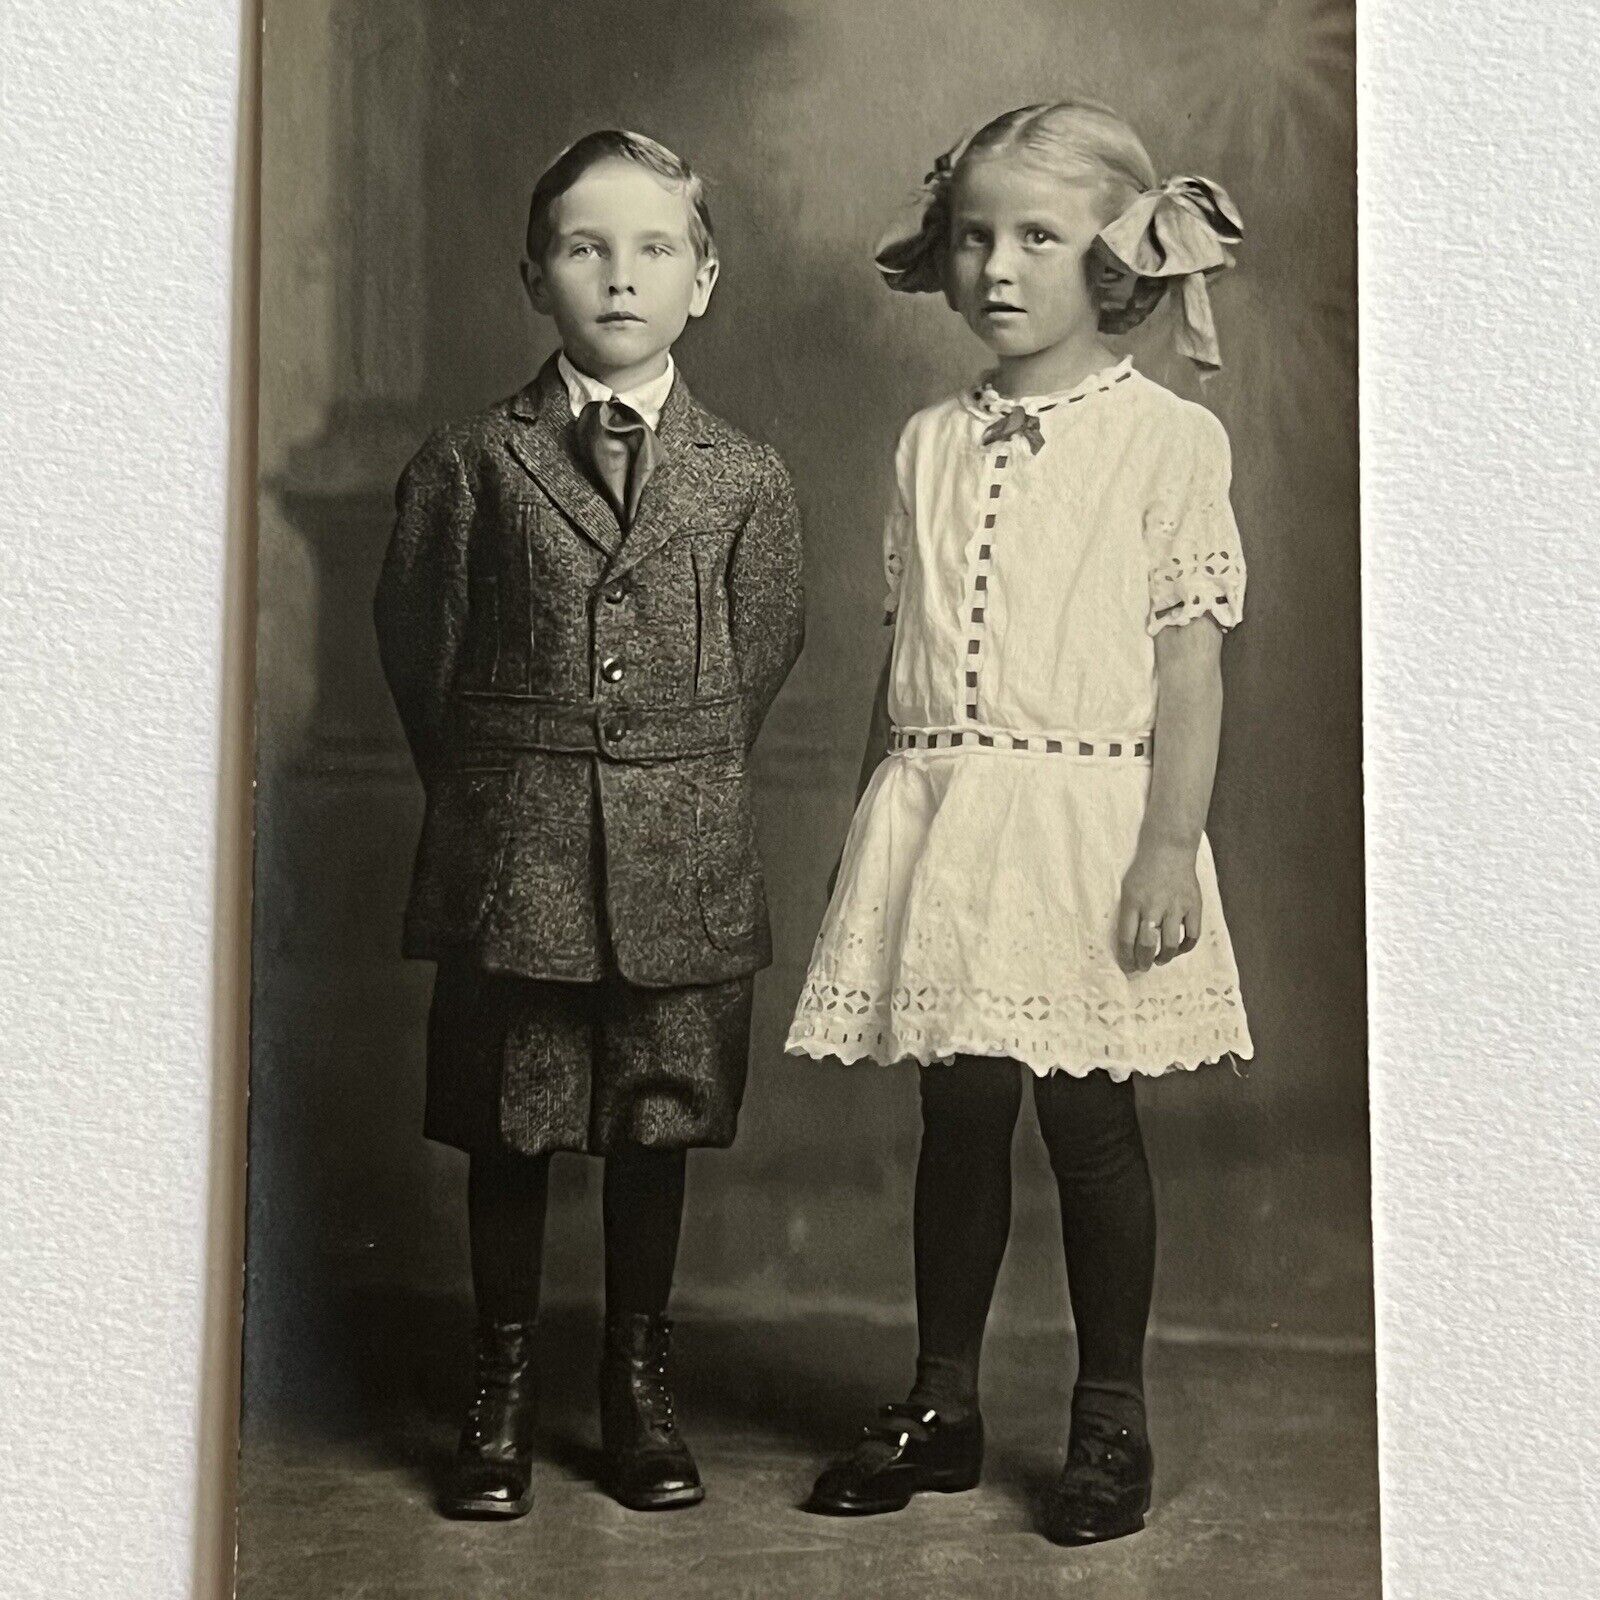 Antique RPPC Real Photograph Postcard Adorable Fashionable Children Boy & Girl